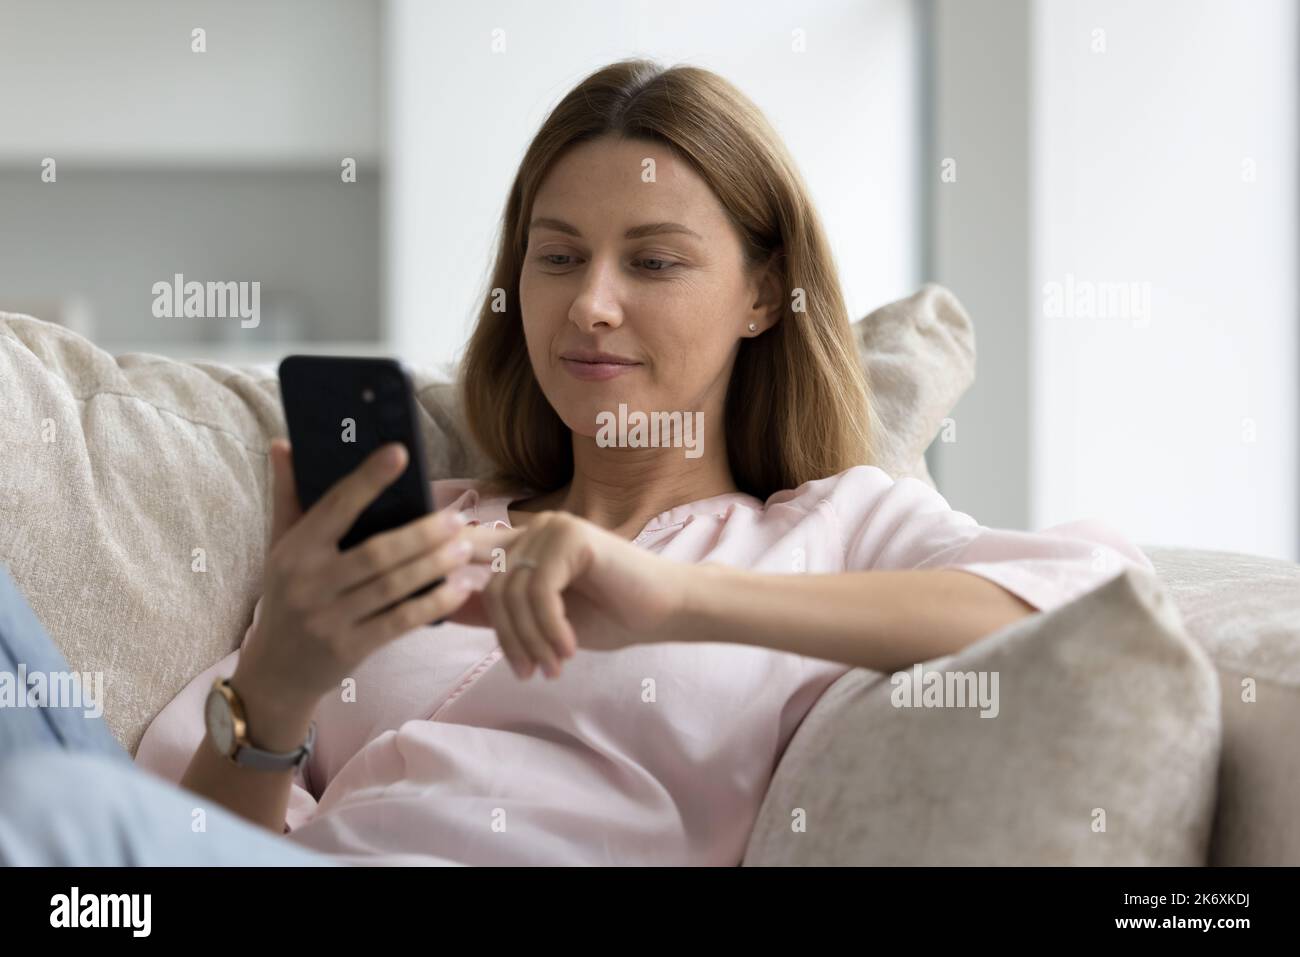 Une jeune femme se repose sur un canapé à l'aide d'un smartphone moderne Banque D'Images